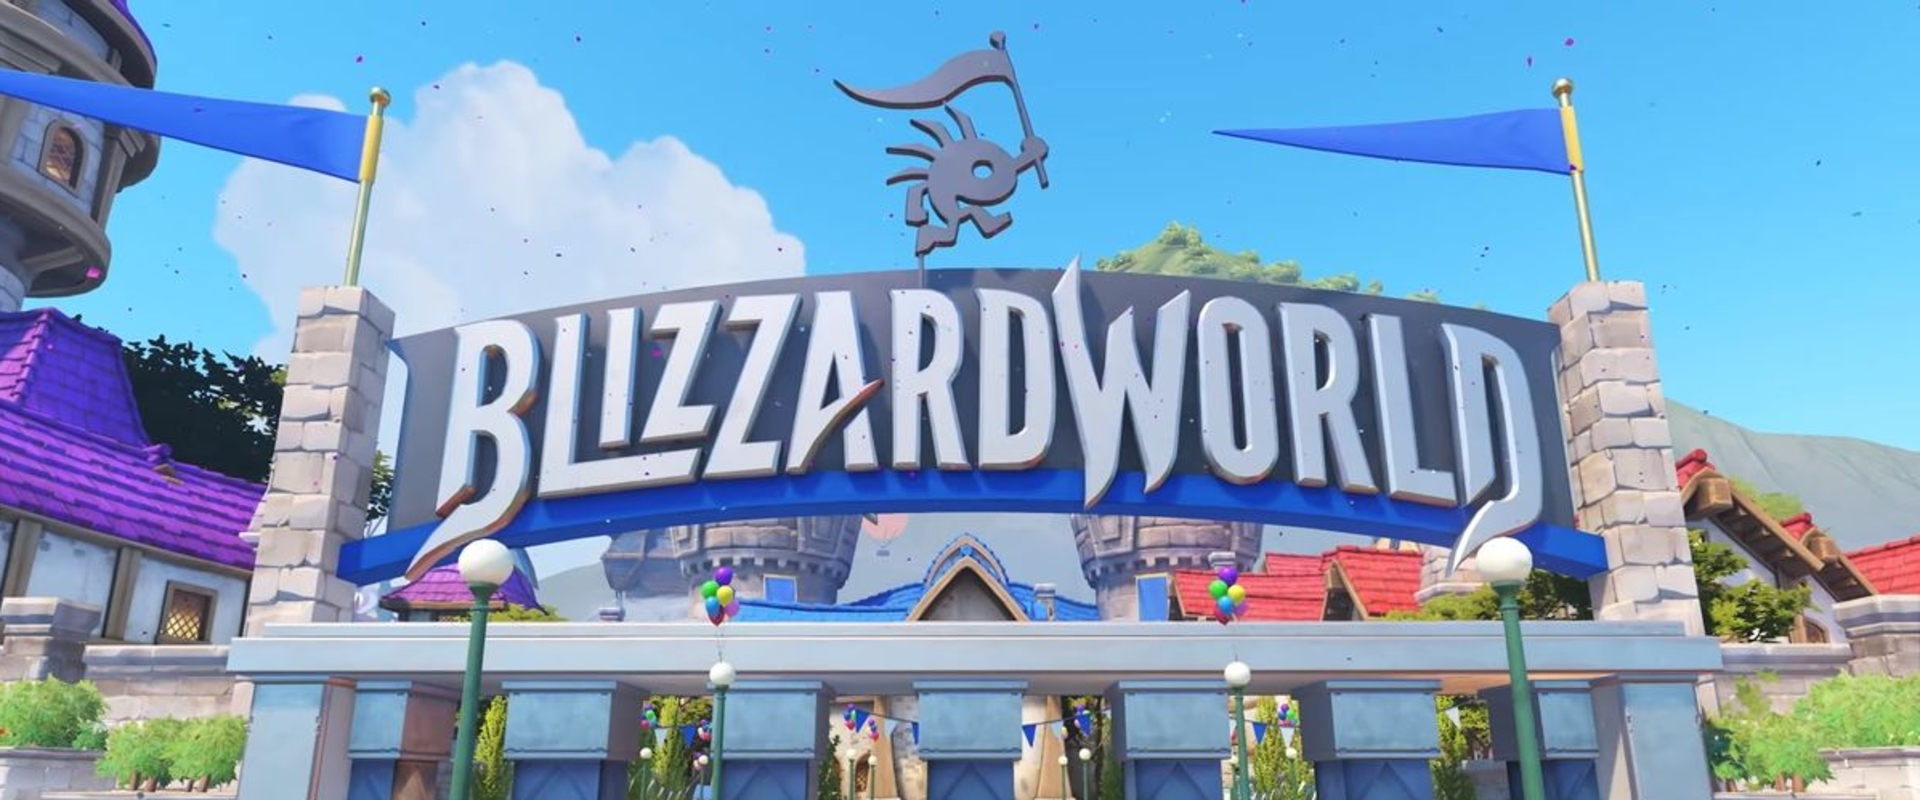 Új emote-ok érkezettek a Blizzard World frissítéshez